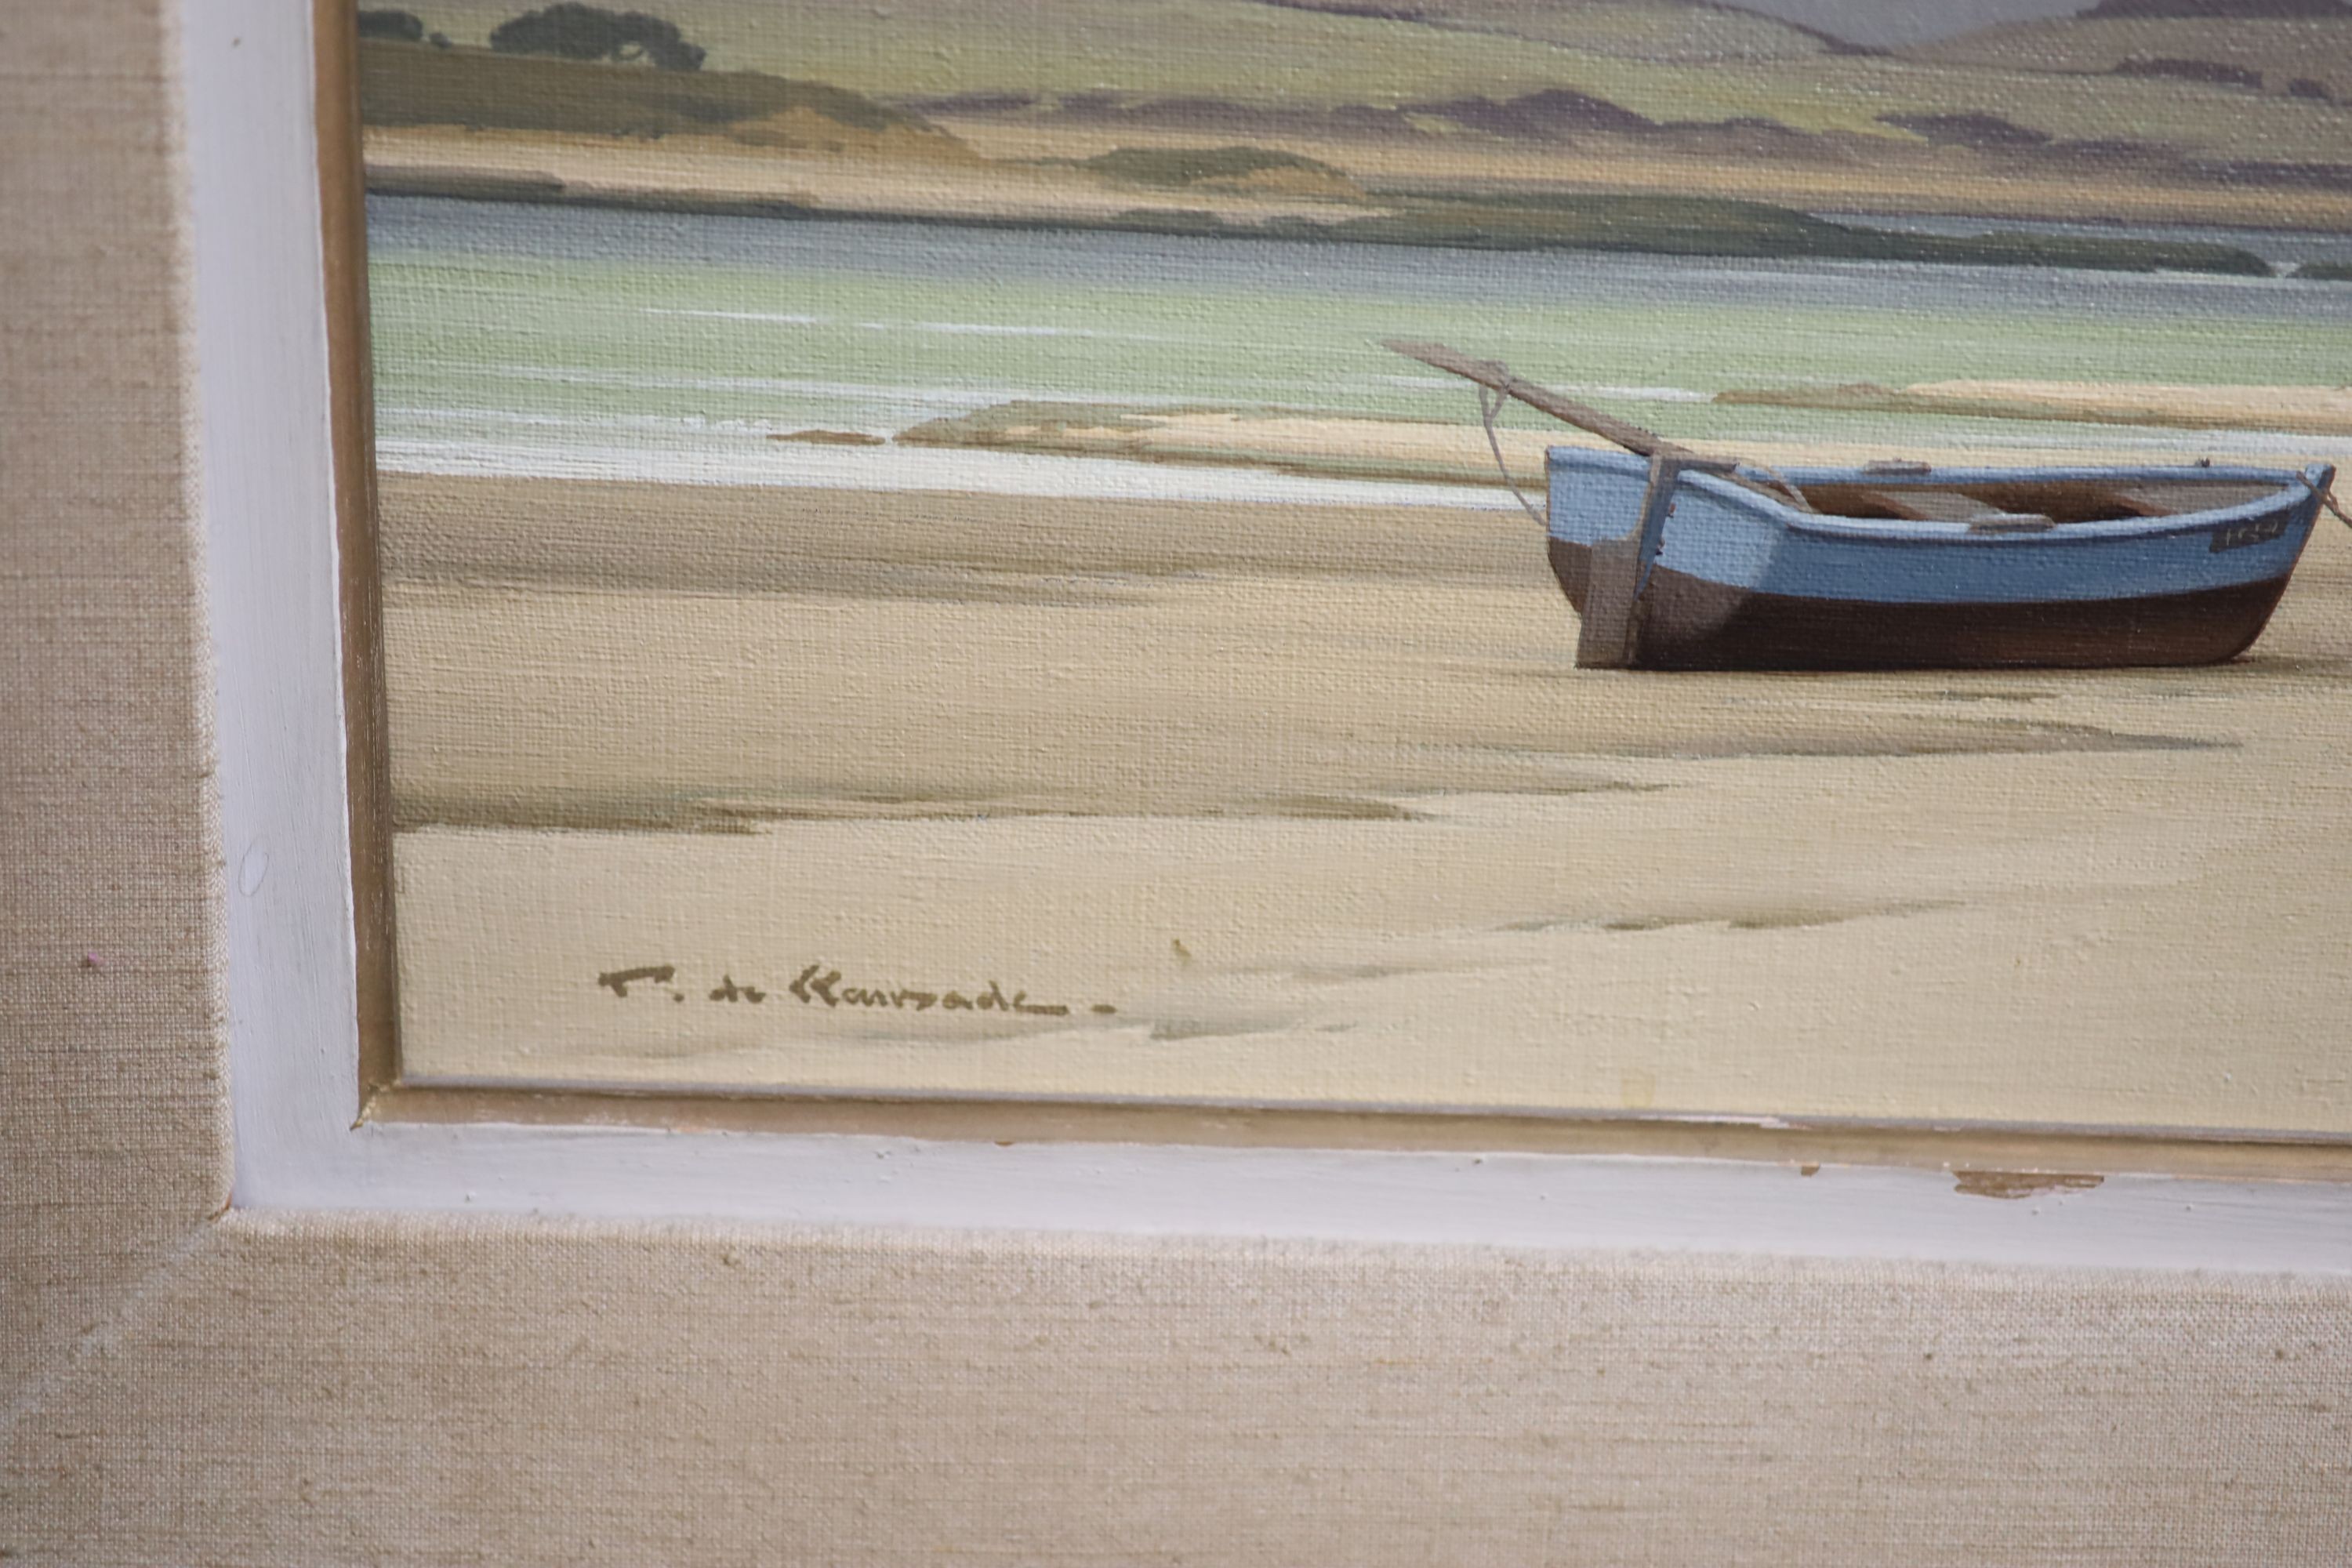 Pierre de Clausades (French, 1910-1976), ‘Coup de Soleil’, oil on canvas, 59 x 72cm.